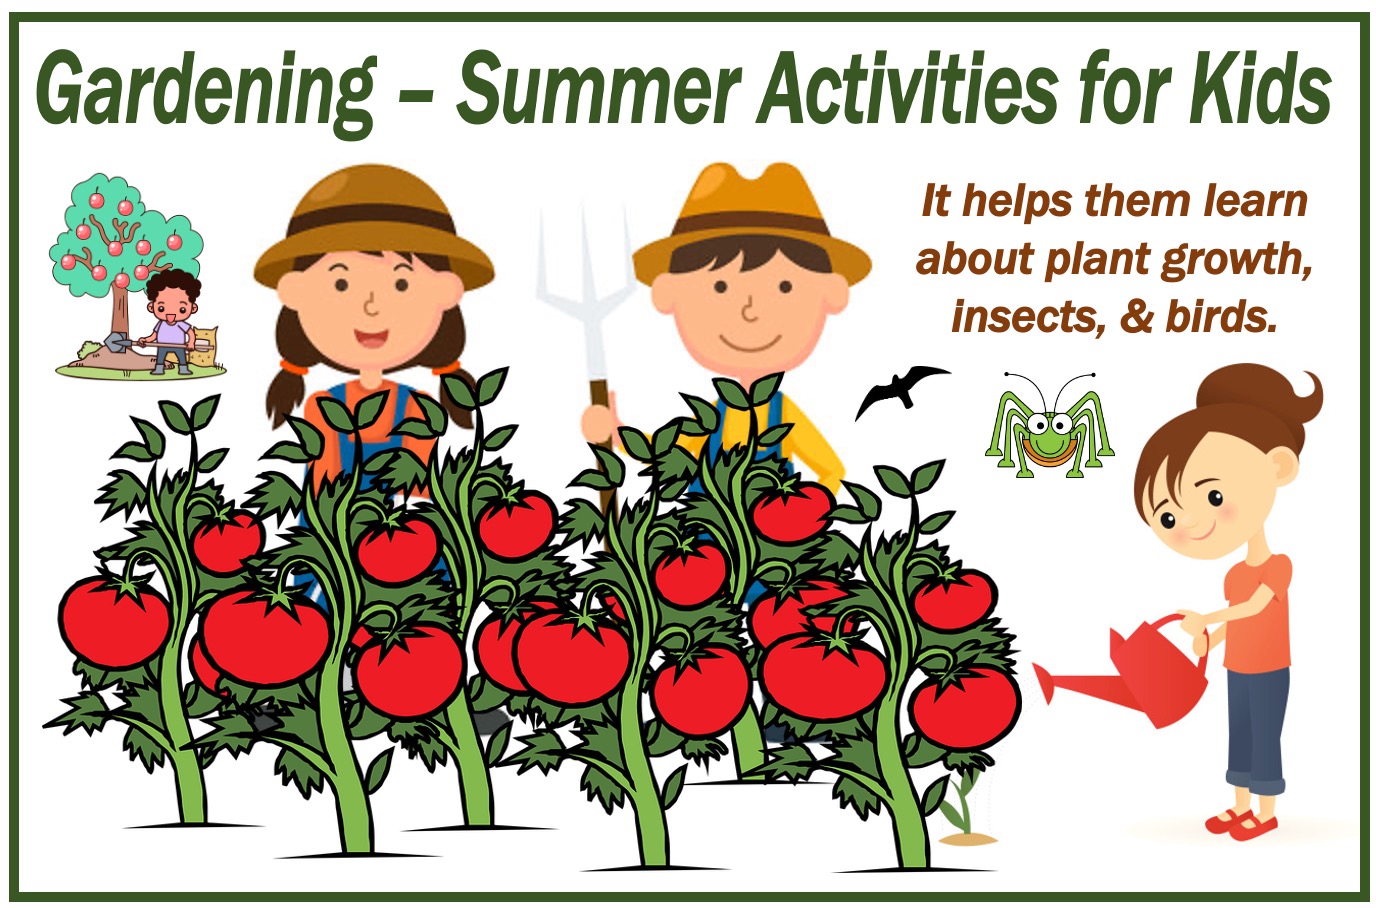 Gardening - summer activities for kids 300000